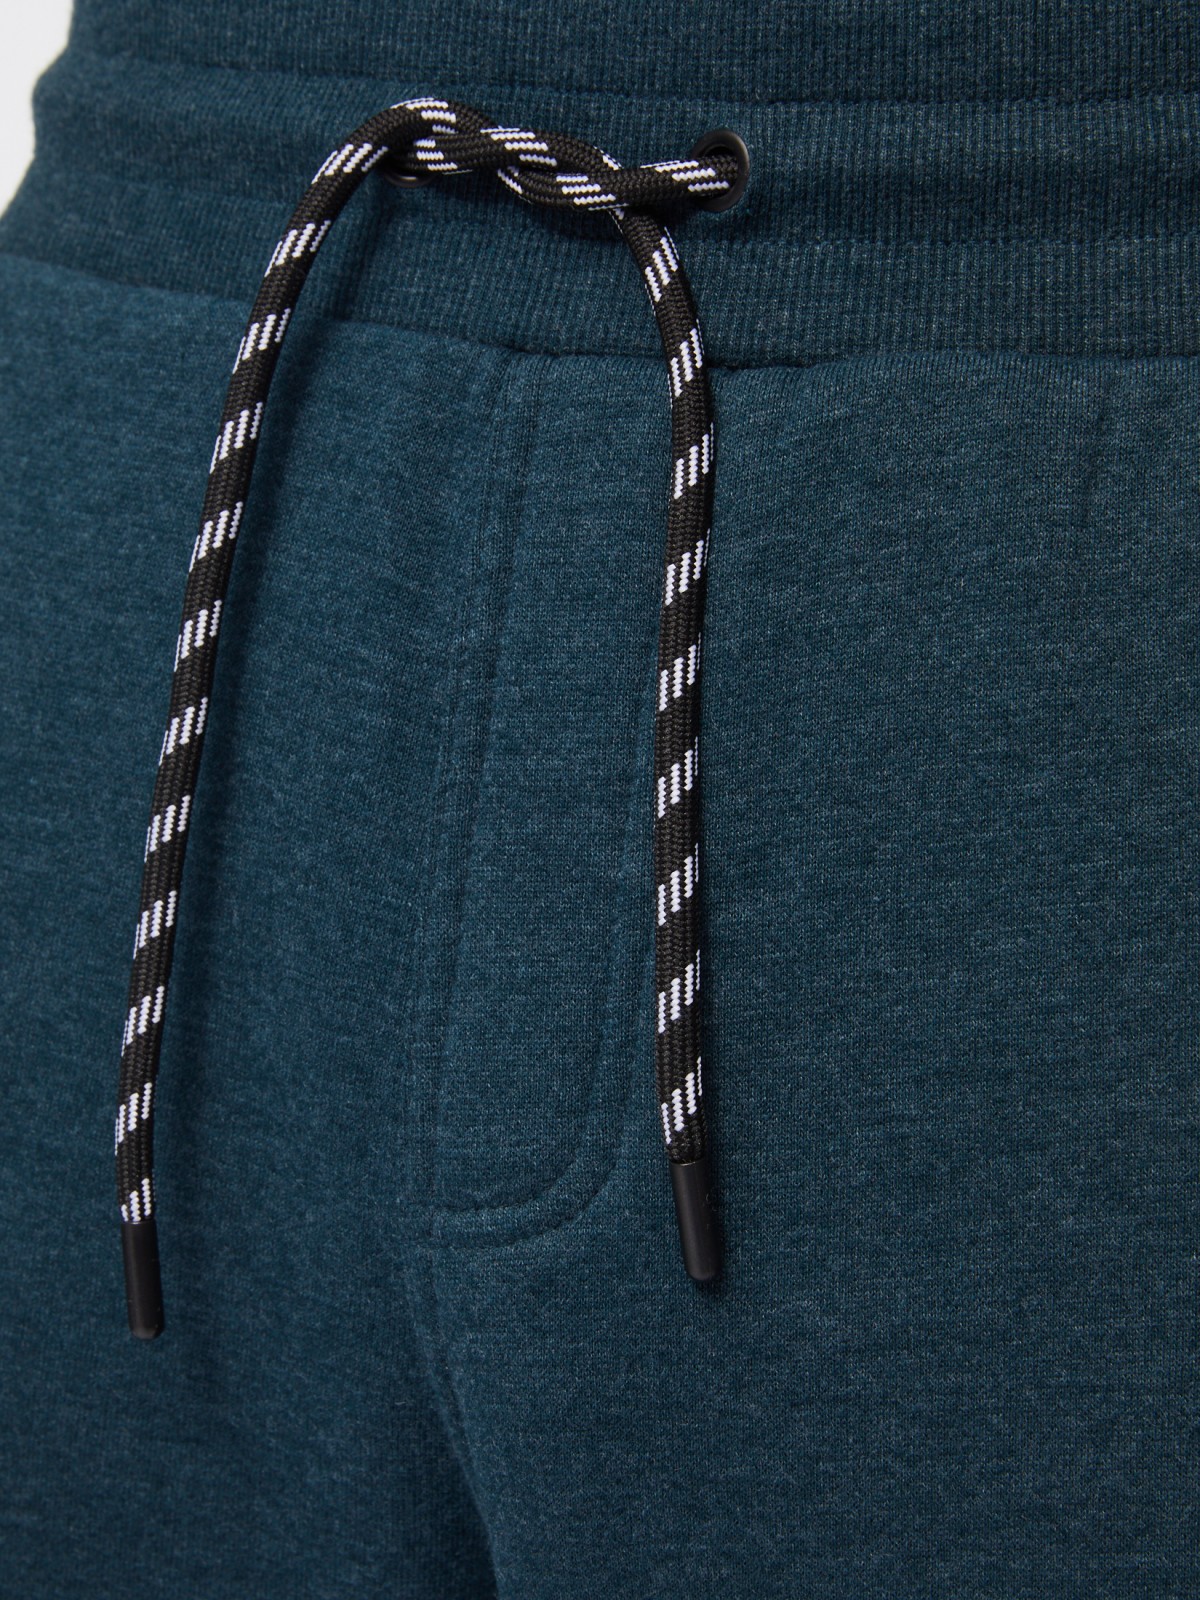 Утеплённые трикотажные брюки-джоггеры в спортивном стиле zolla 014117660063, цвет темно-бирюзовый, размер M - фото 4